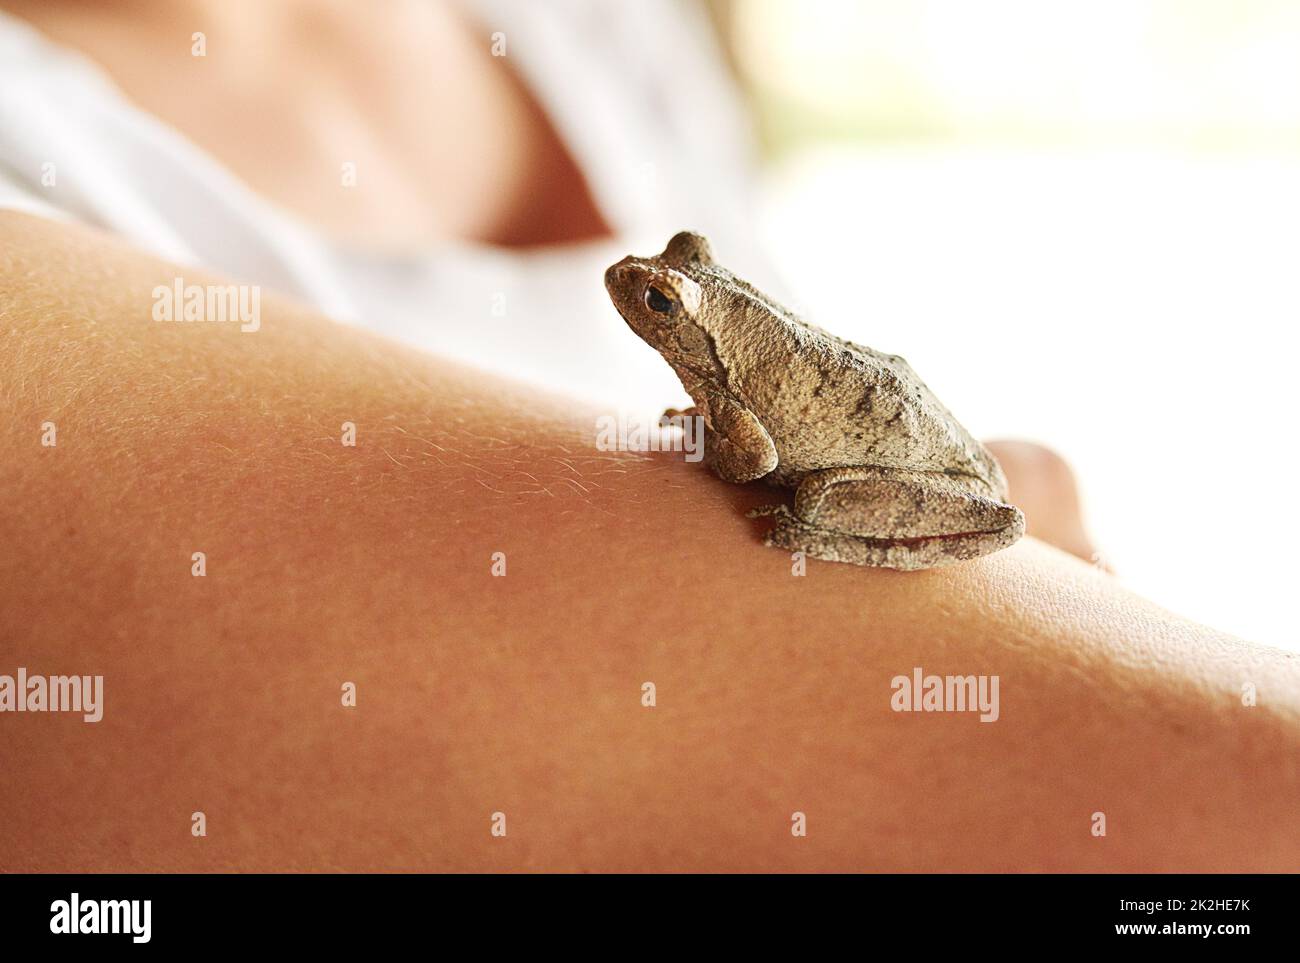 Un ragazzo così carino. Shot di una piccola rana seduta su un braccio femminile. Foto Stock